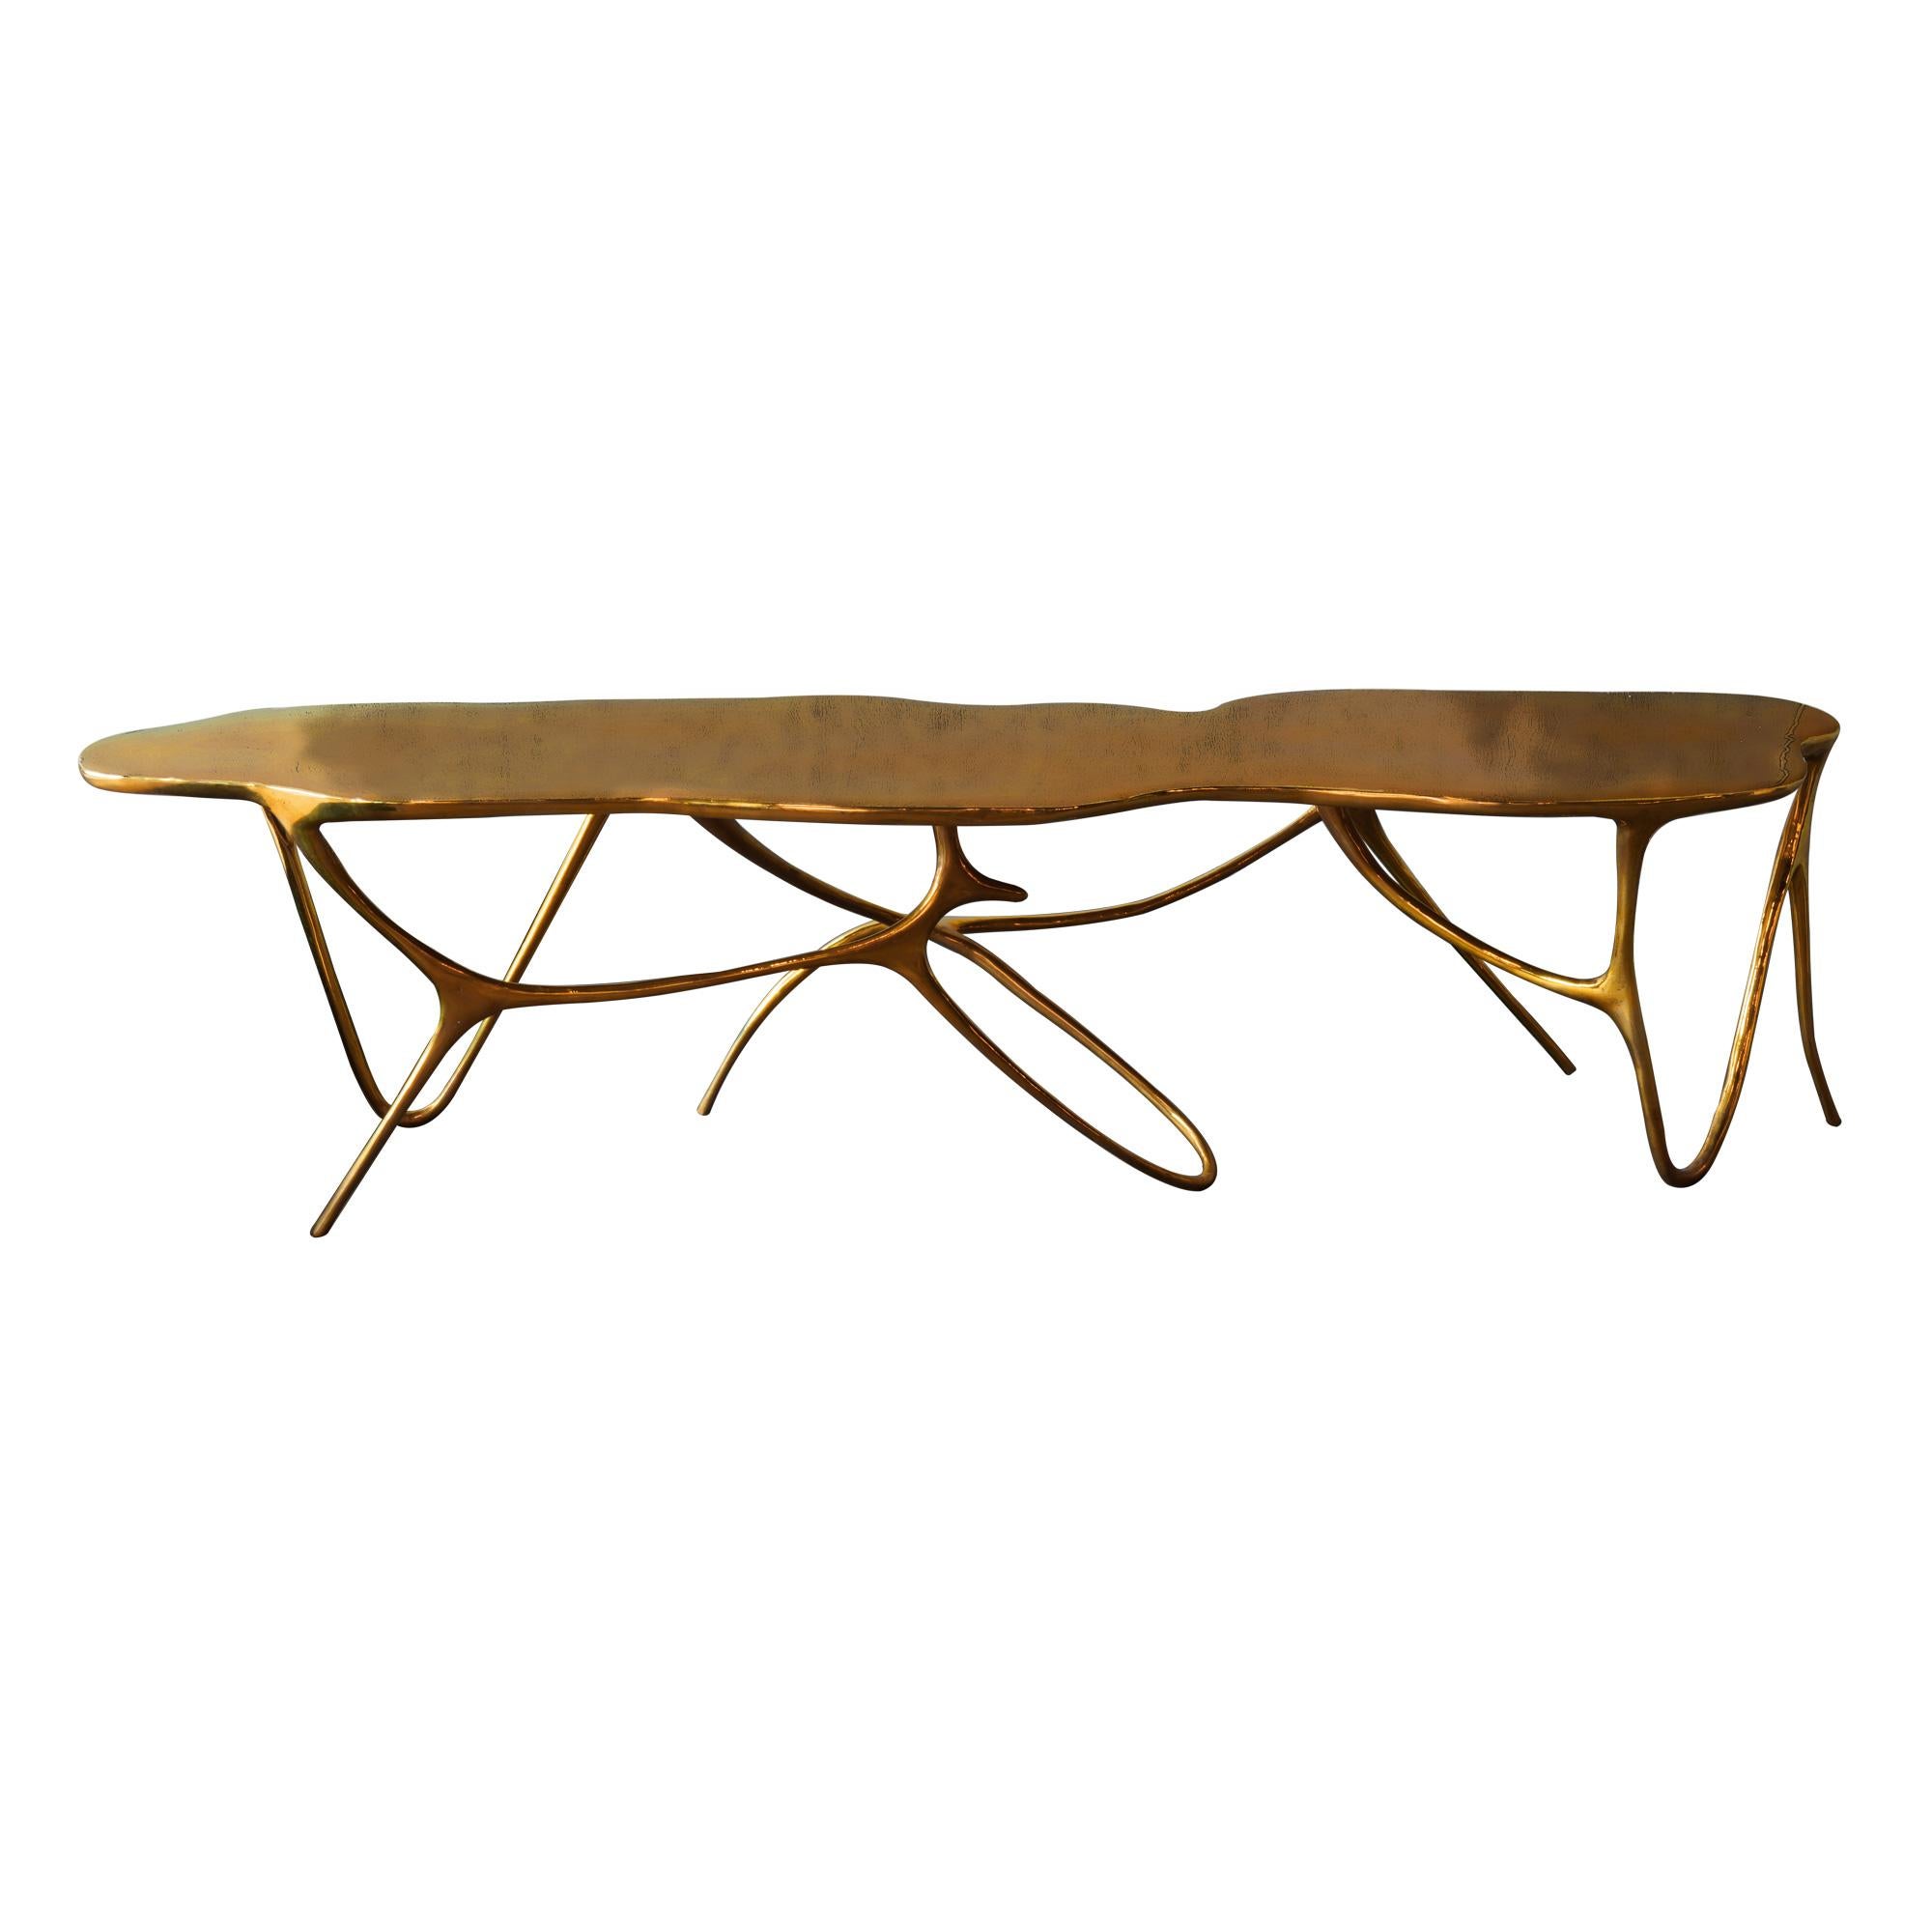 Eleganter handgefertigter Tisch oder Bank aus Bronze.
Can be customized to your specifications or COM.

Auch mit einem gepolsterten Sitzkissen erhältlich.